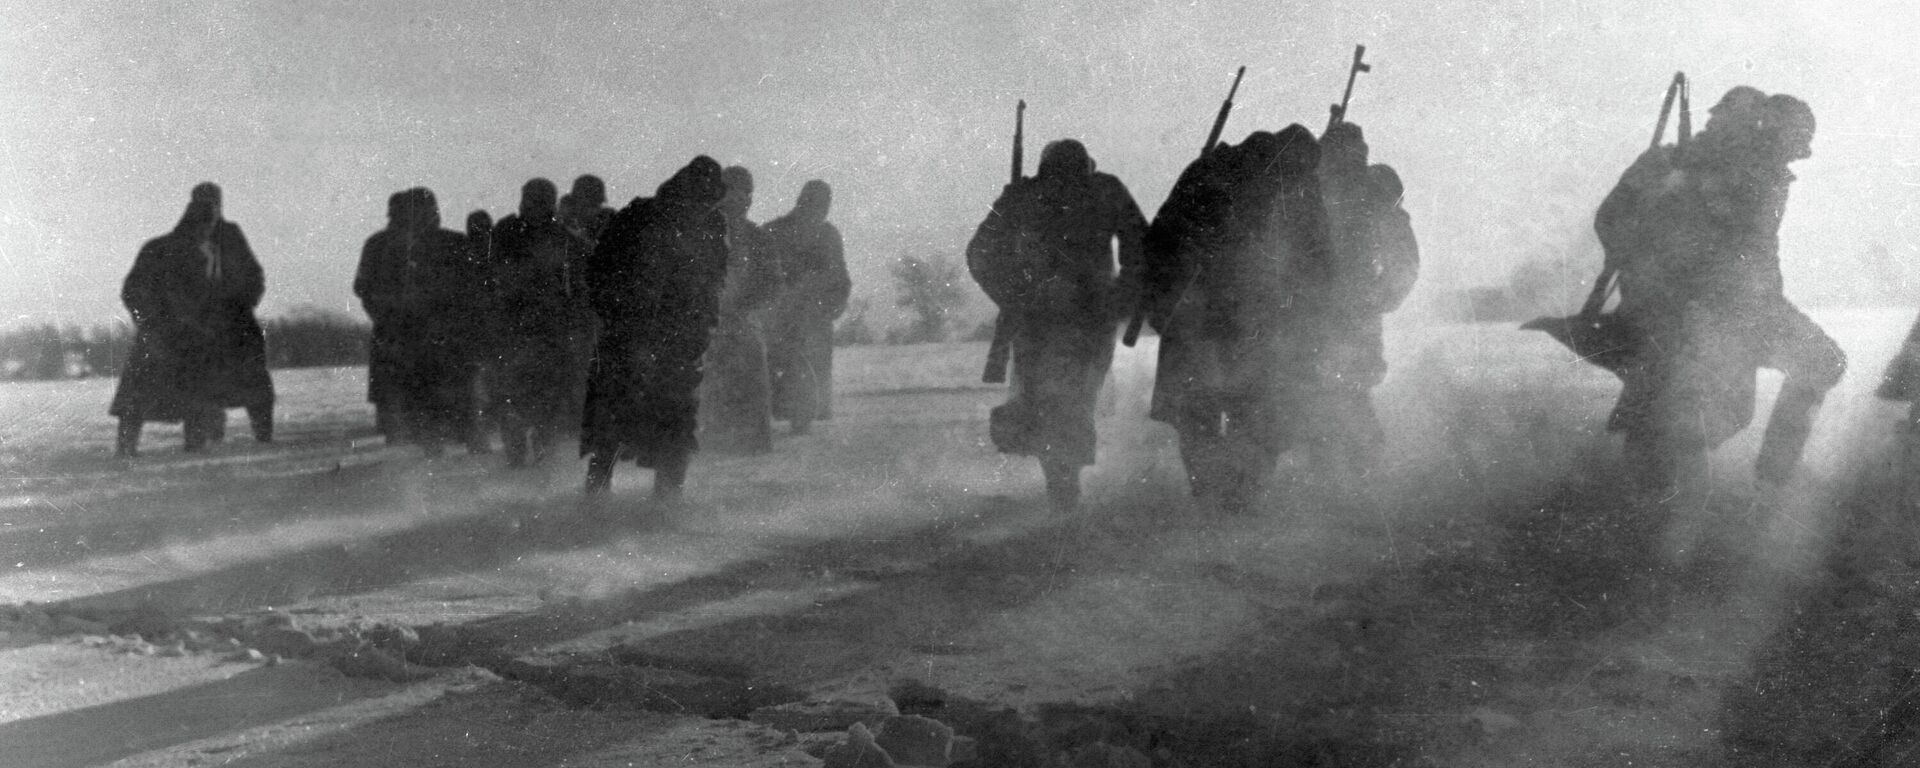 Великая Отечественная война 1941-1945 годов.
Немецкие солдаты сдаются в плен во время битвы под Москвой. - Sputnik Абхазия, 1920, 05.12.2021